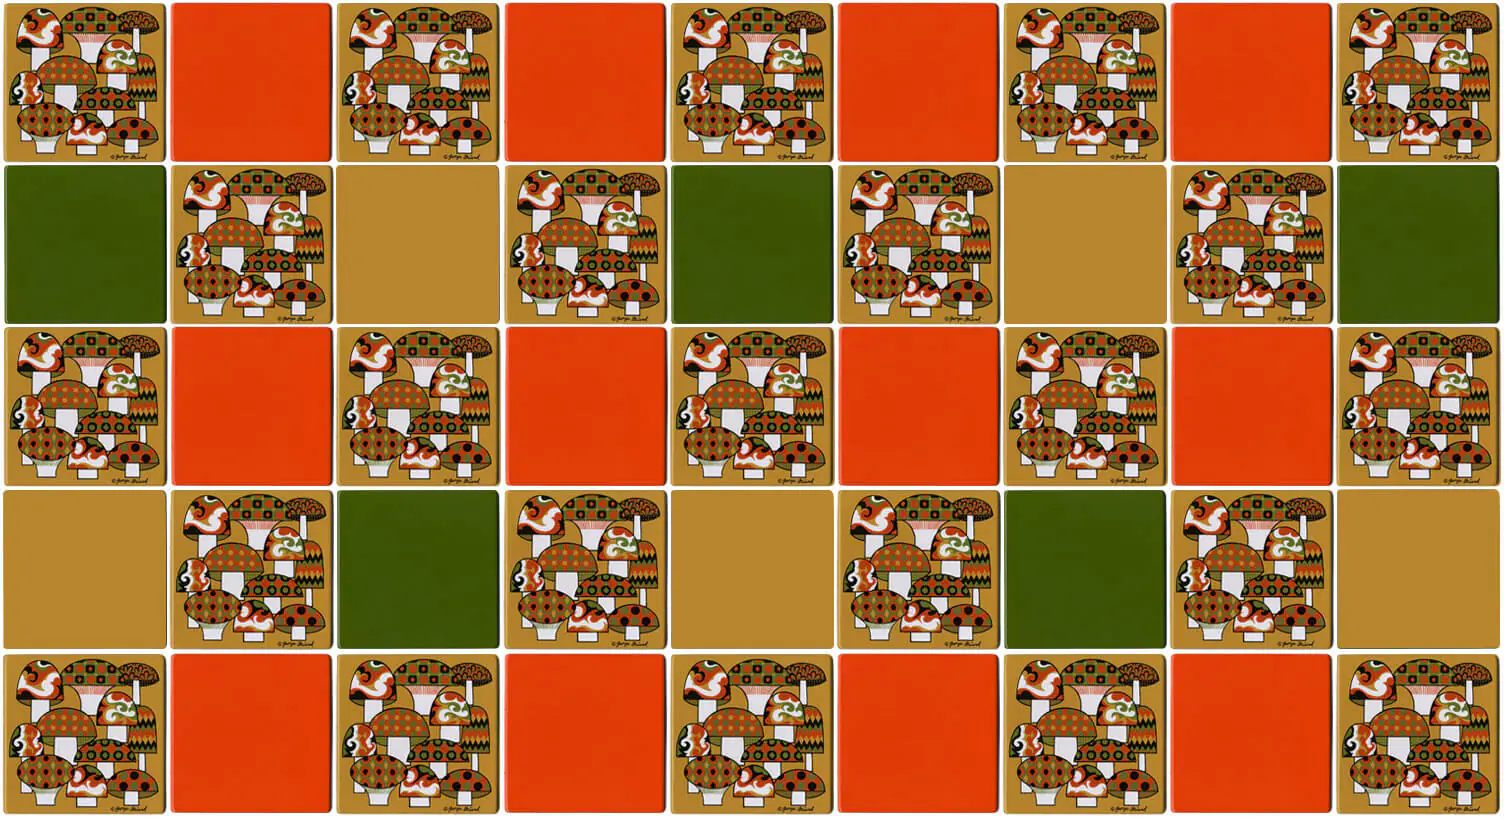 georges-birard-mushroom-tile-grid3-large